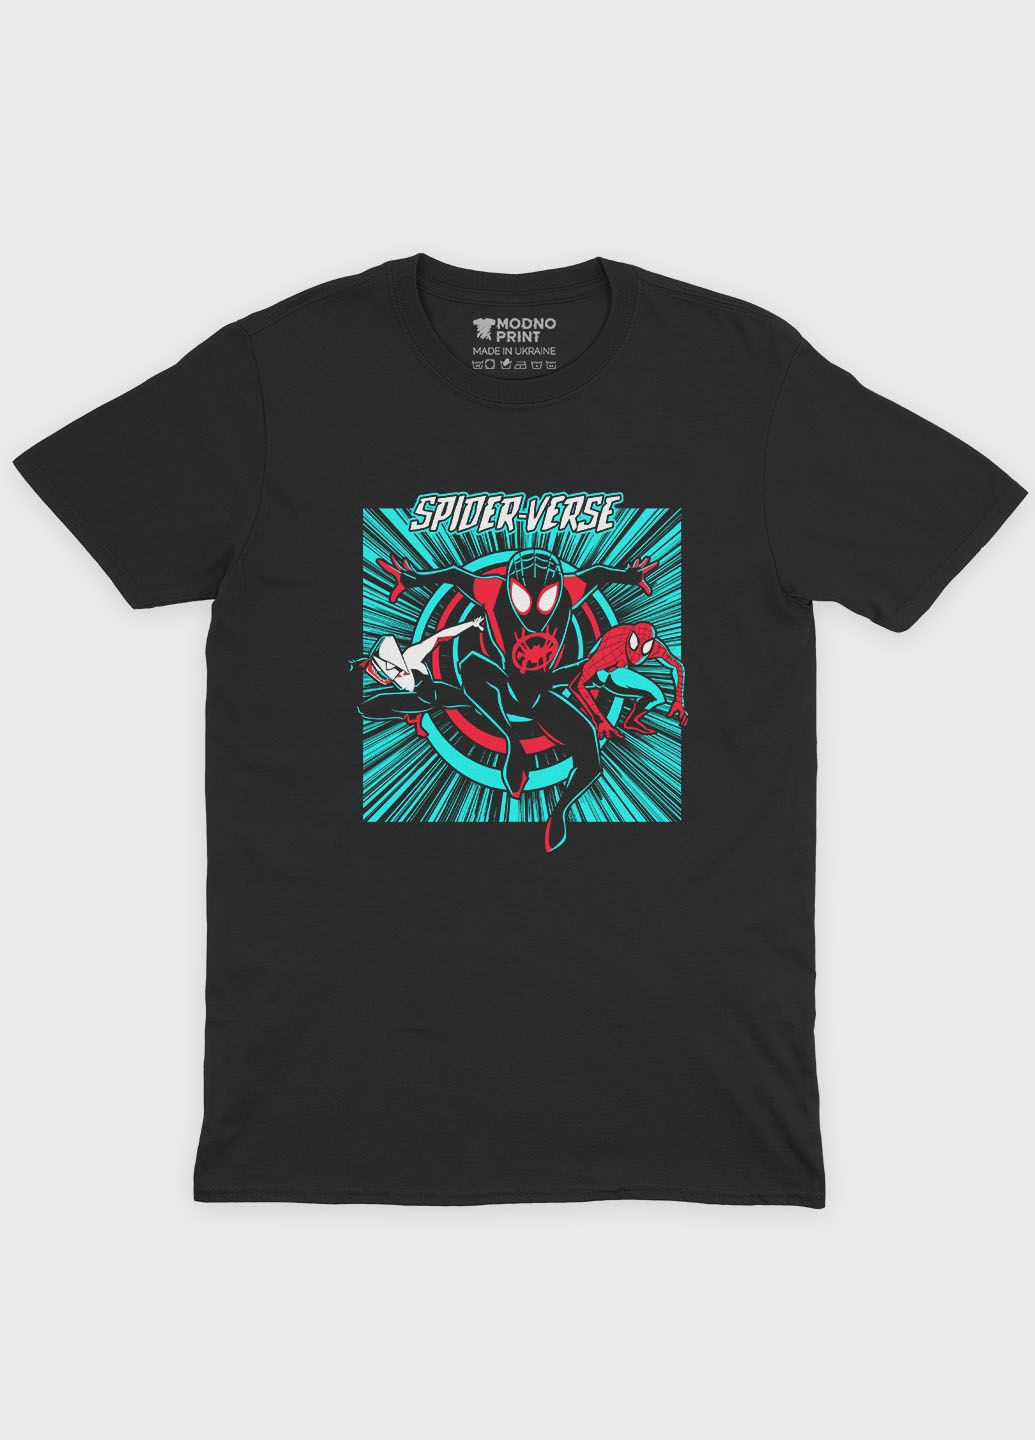 Черная демисезонная футболка для мальчика с принтом супергероя - человек-паук (ts001-1-bl-006-014-055-b) Modno